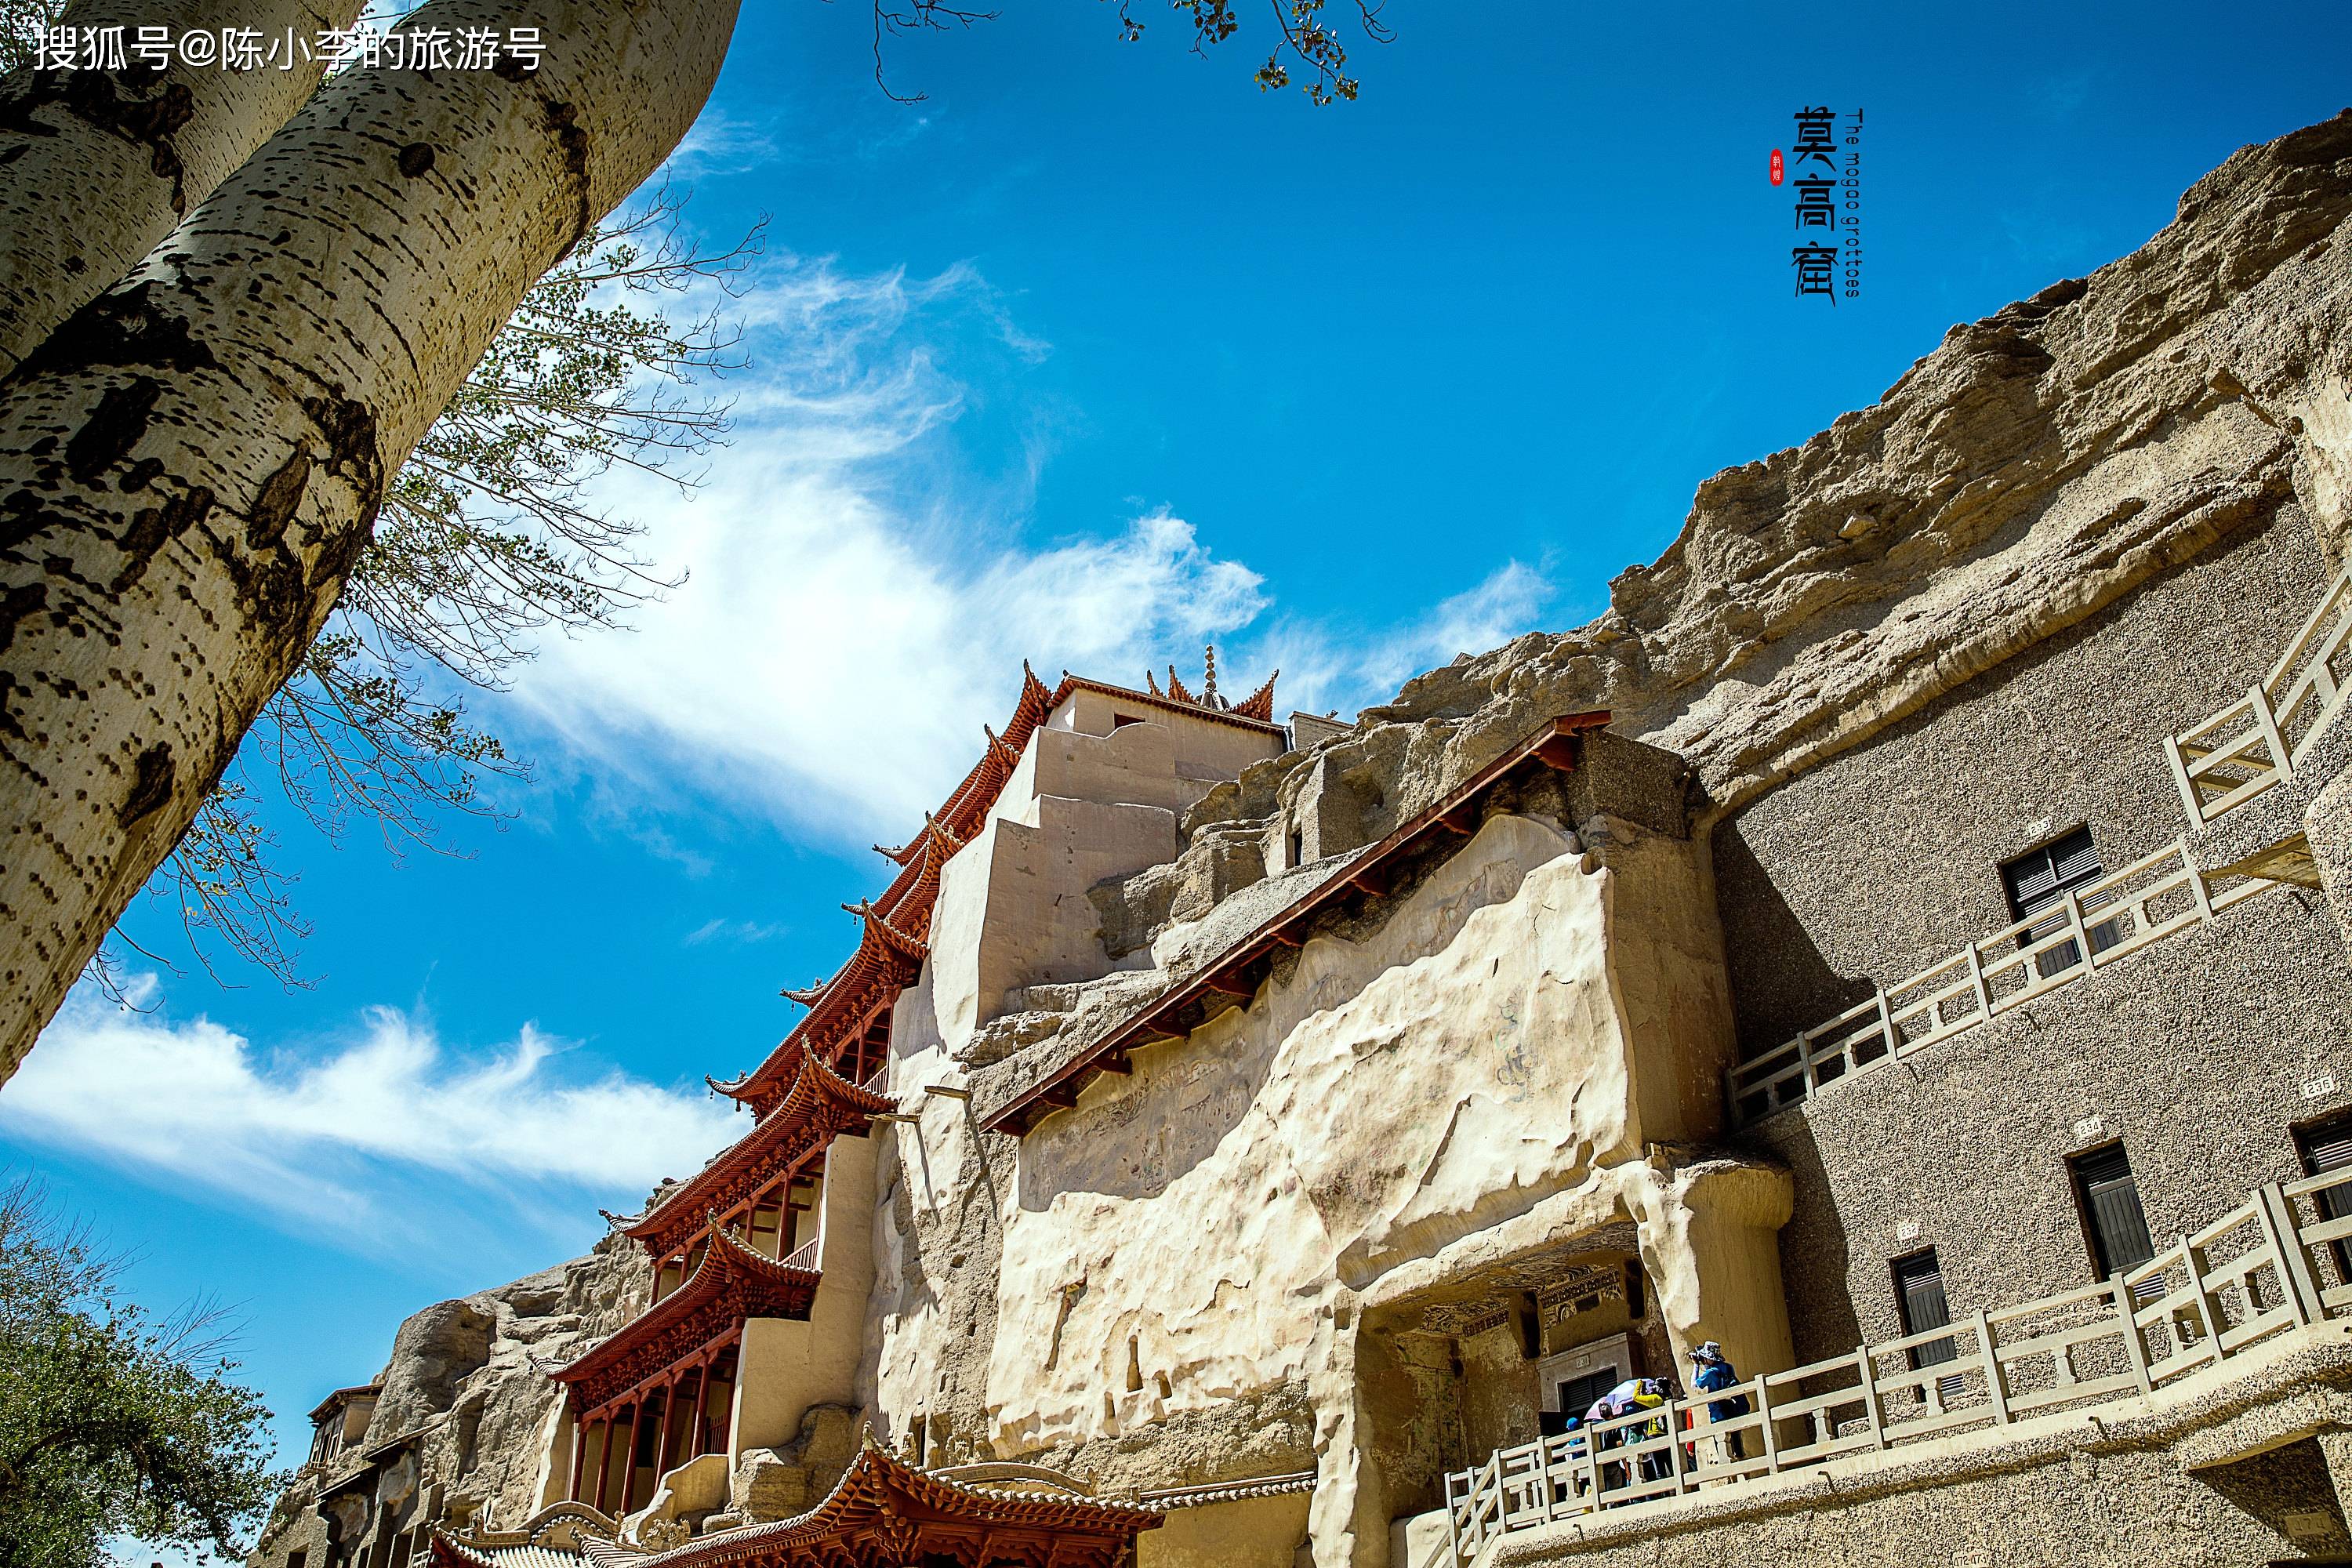 中国四大石窟之一,敦煌莫高窟,世界文化遗产,人类的艺术殿堂 !